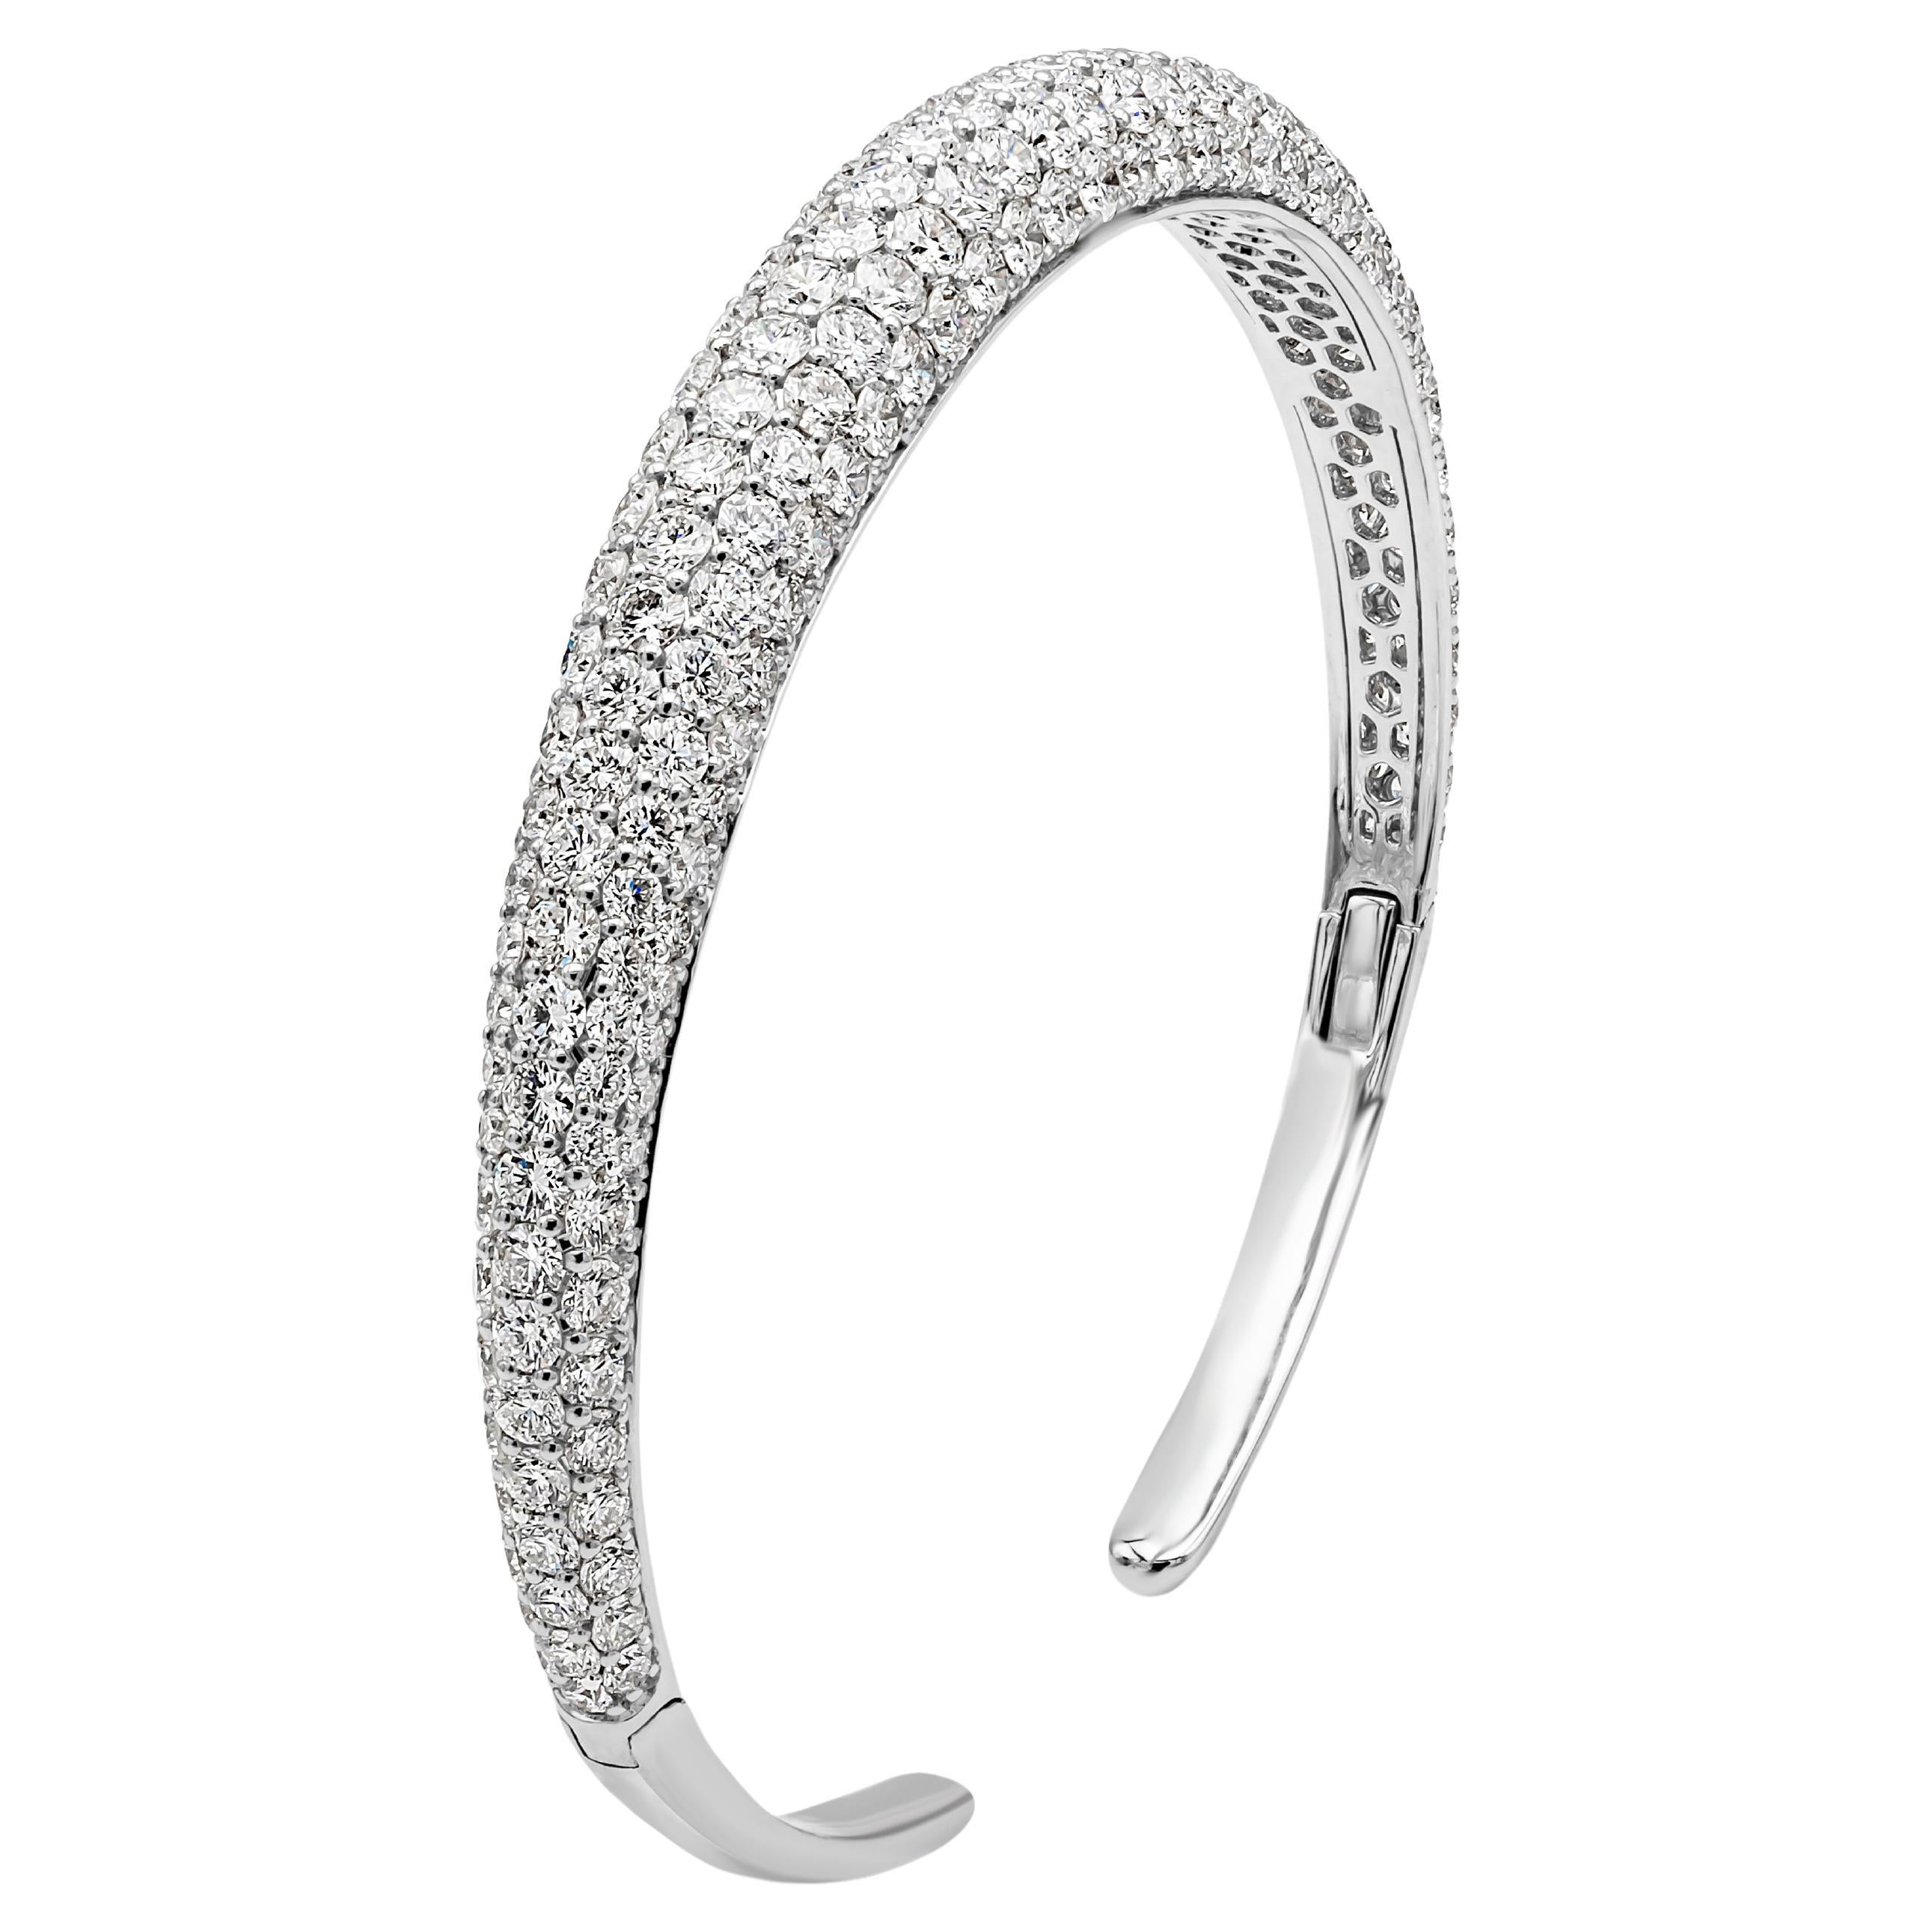 Ce magnifique bracelet bangle met en valeur 209 diamants ronds de taille brillant pesant 8,05 carats au total, de couleur F-G, de pureté VS-SI et sertis en dôme micro-pavé dans une monture à griffes partagées. Finement réalisé en or blanc 18 carats